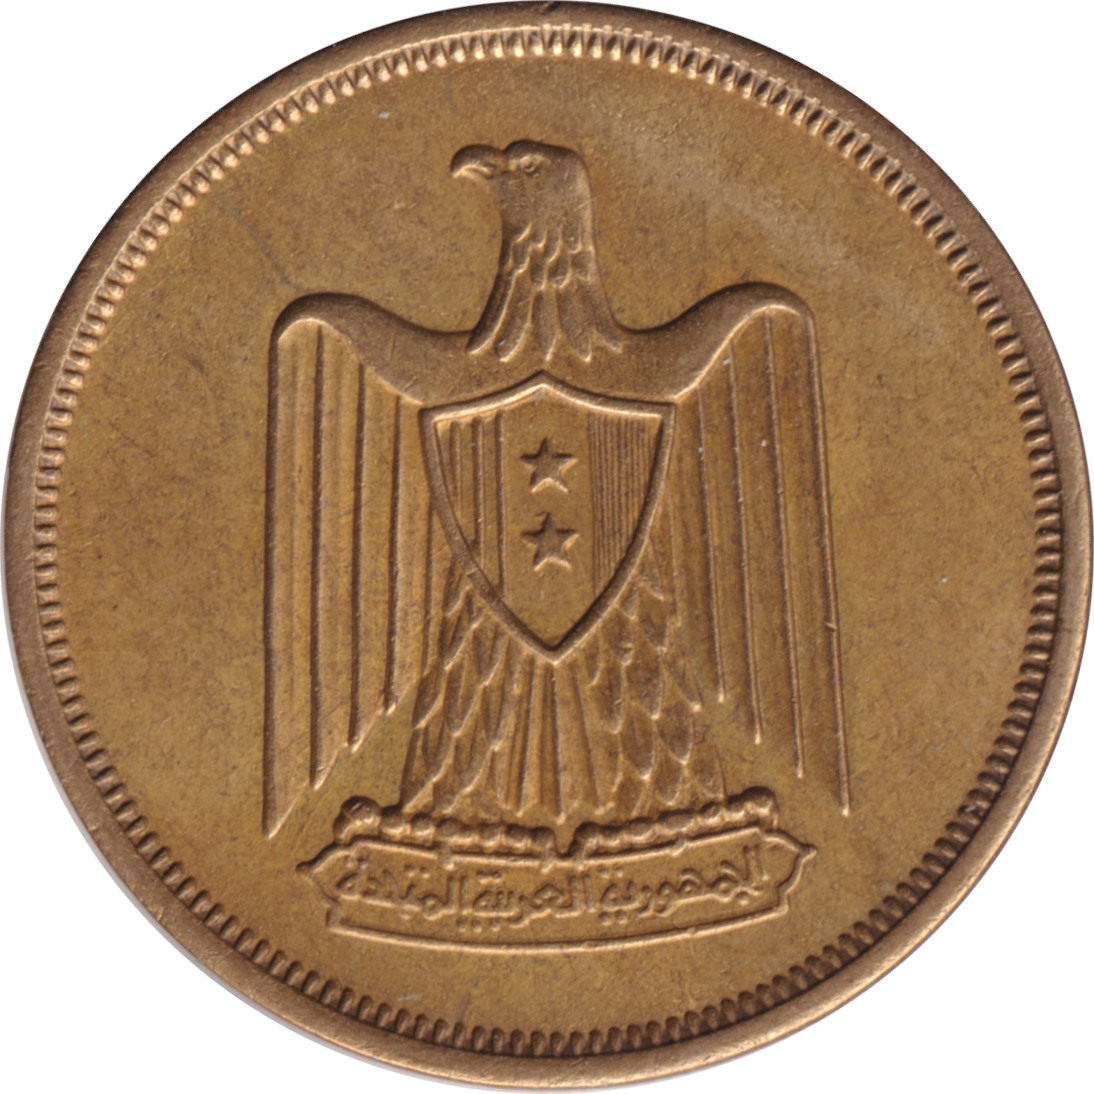 10 milliemes - République Arabe Unie